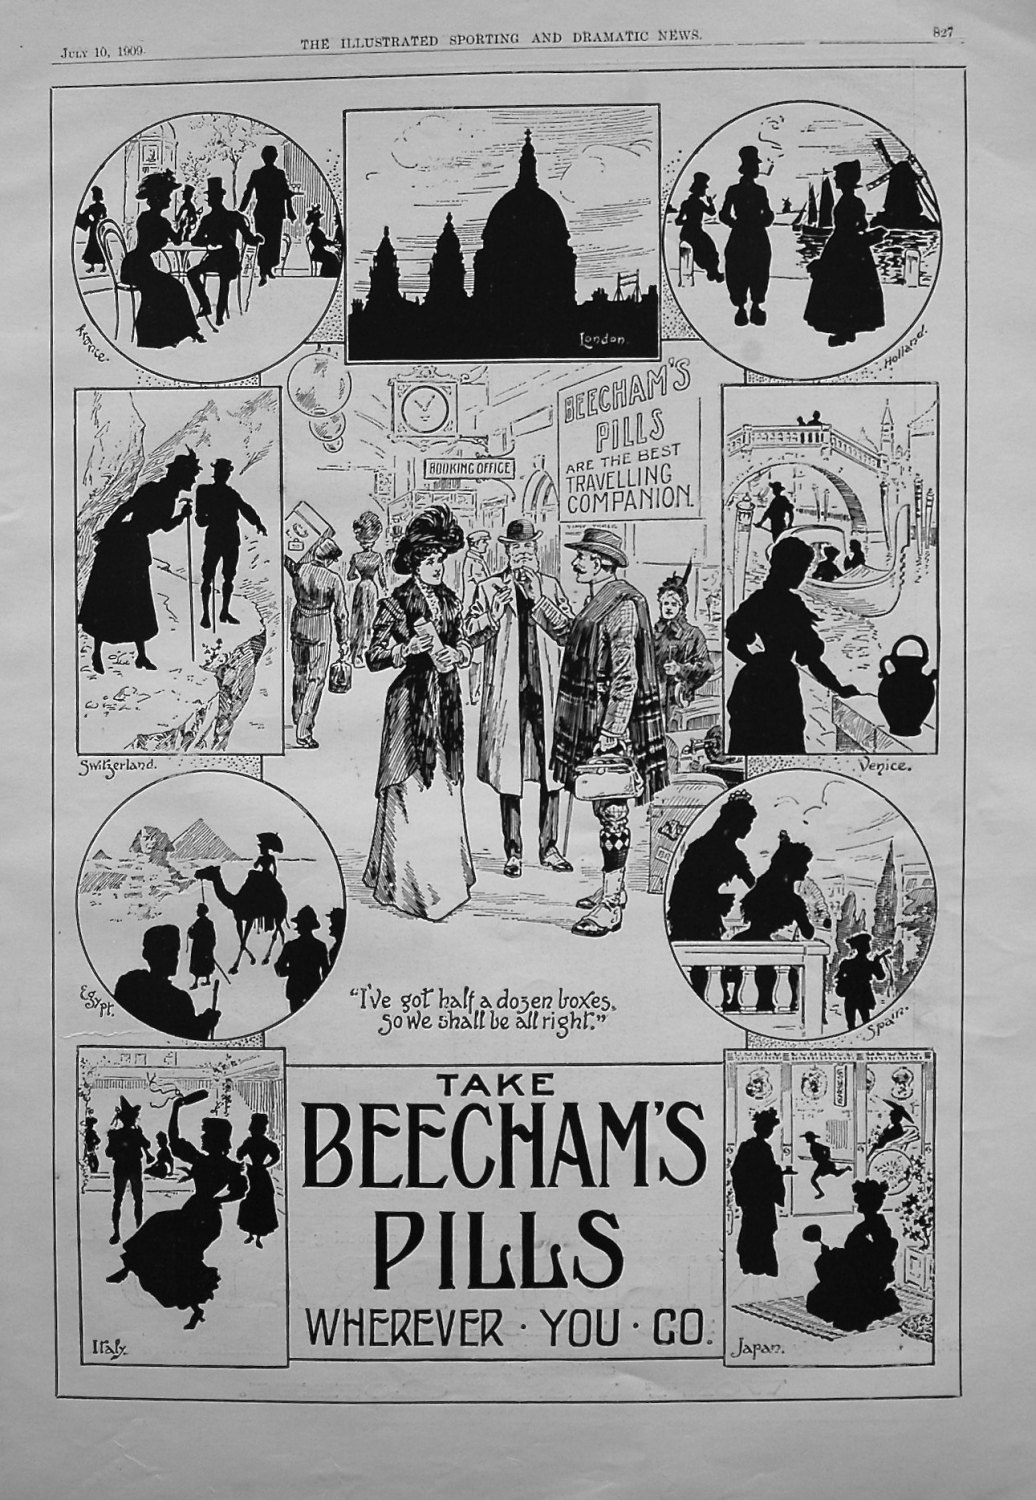 Beecham's Pills. 1909